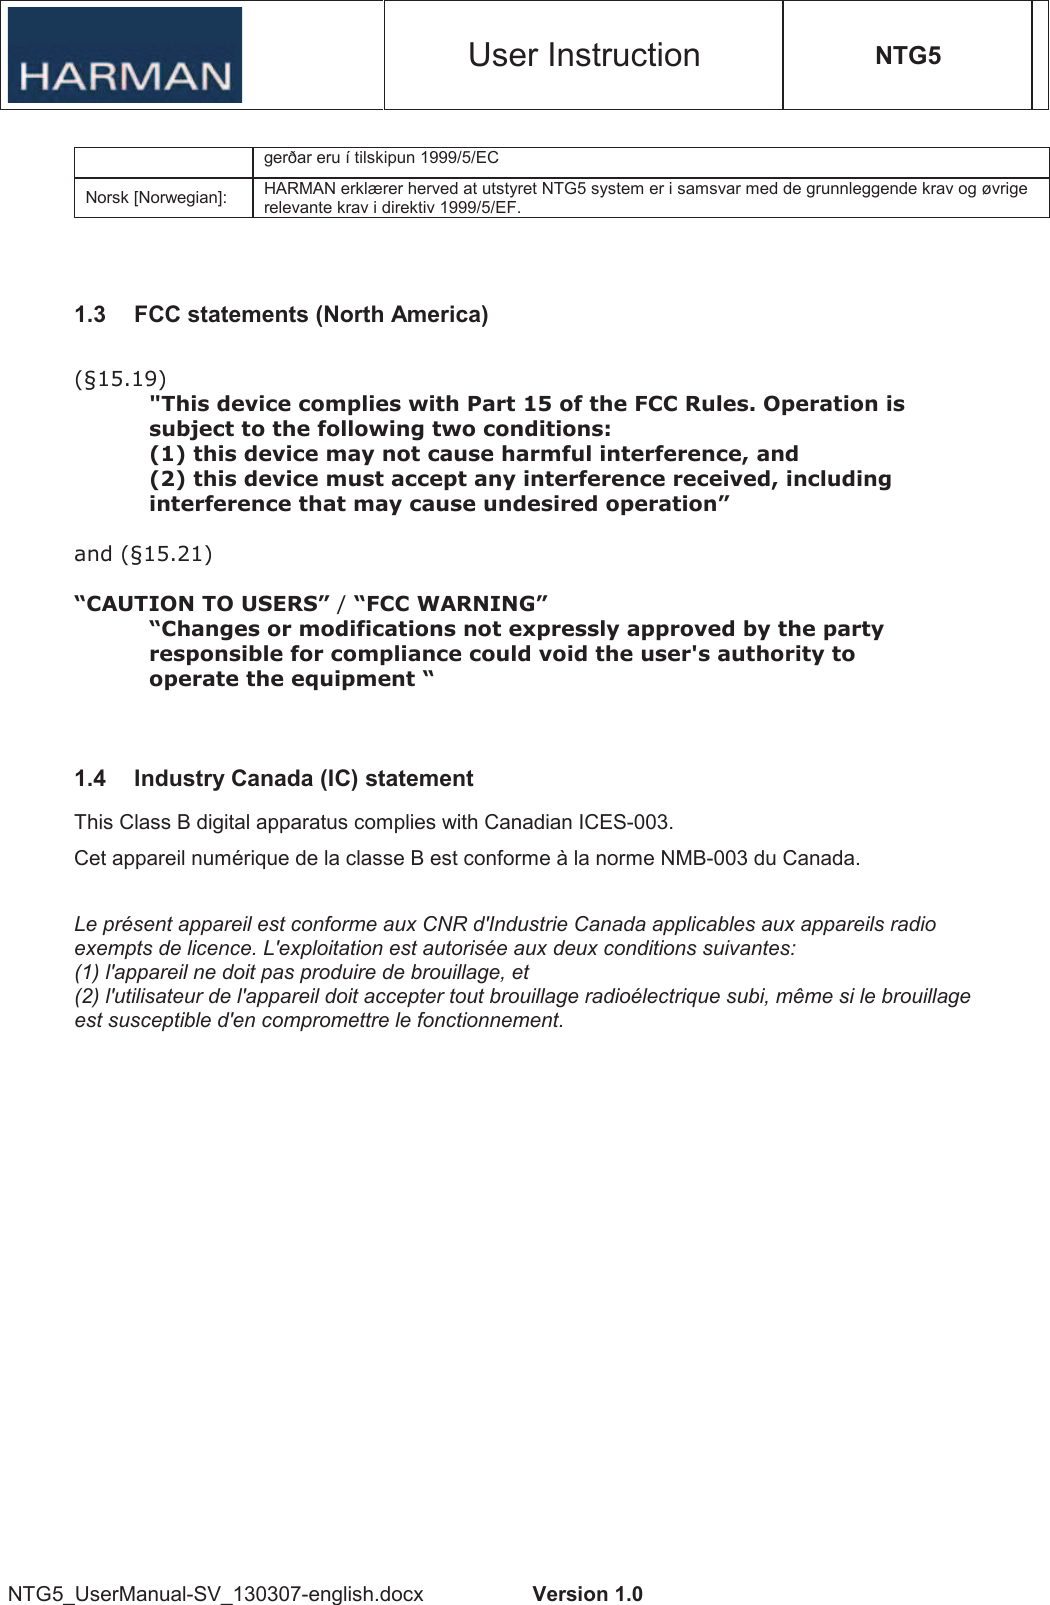 User Instruction NTG5 NTG5_UserManual-SV_130307-english.docx  Version 1.0 gerðar eru í tilskipun 1999/5/EC Norsk [Norwegian]:  HARMAN erklærer herved at utstyret NTG5 system er i samsvar med de grunnleggende krav og øvrige relevante krav i direktiv 1999/5/EF. 1.3  FCC statements (North America)  !&quot;#$%&quot;&amp;#$% $&apos;()*+,*-.-&apos;(/),+,0&apos;( 1$$$2$3(1.4  Industry Canada (IC) statement This Class B digital apparatus complies with Canadian ICES-003. Cet appareil numérique de la classe B est conforme à la norme NMB-003 du Canada. Le présent appareil est conforme aux CNR d&apos;Industrie Canada applicables aux appareils radio exempts de licence. L&apos;exploitation est autorisée aux deux conditions suivantes:  (1) l&apos;appareil ne doit pas produire de brouillage, et  (2) l&apos;utilisateur de l&apos;appareil doit accepter tout brouillage radioélectrique subi, même si le brouillage est susceptible d&apos;en compromettre le fonctionnement. 